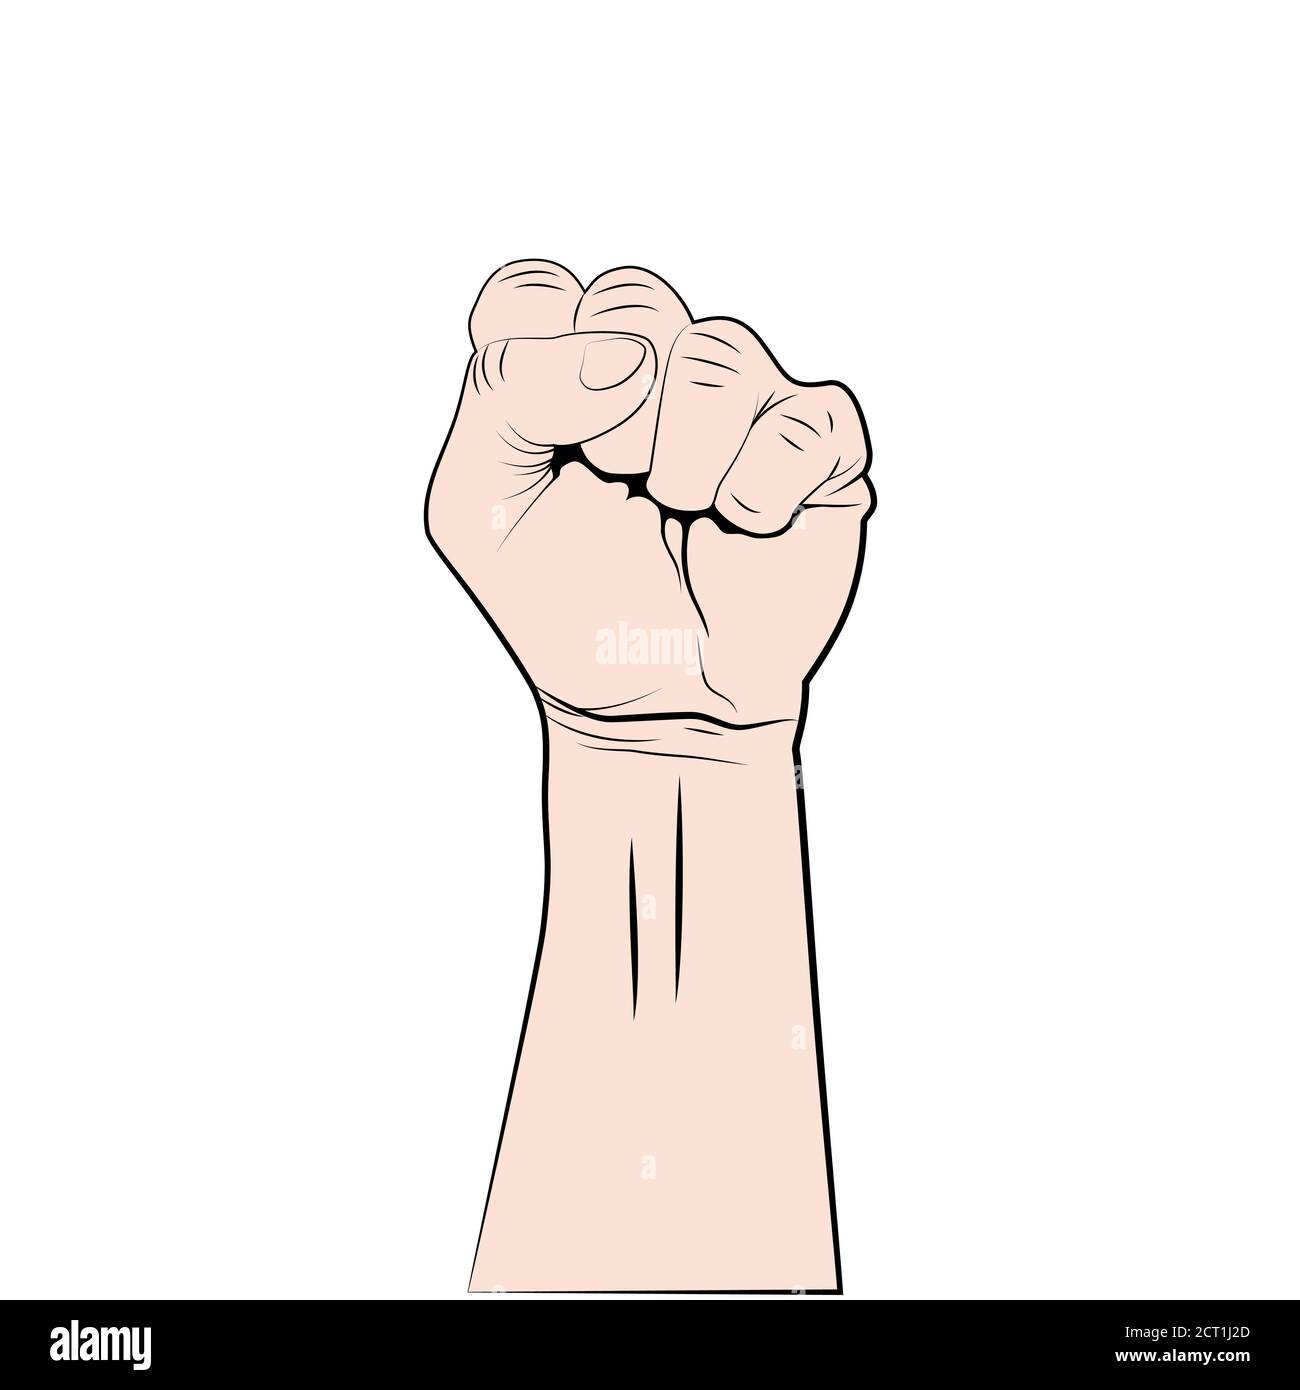 Fist up - simbolo di protesta, rivoluzione o forza. Mano rialzata isolata su sfondo bianco. Firma del concept. Vettore Illustrazione Vettoriale